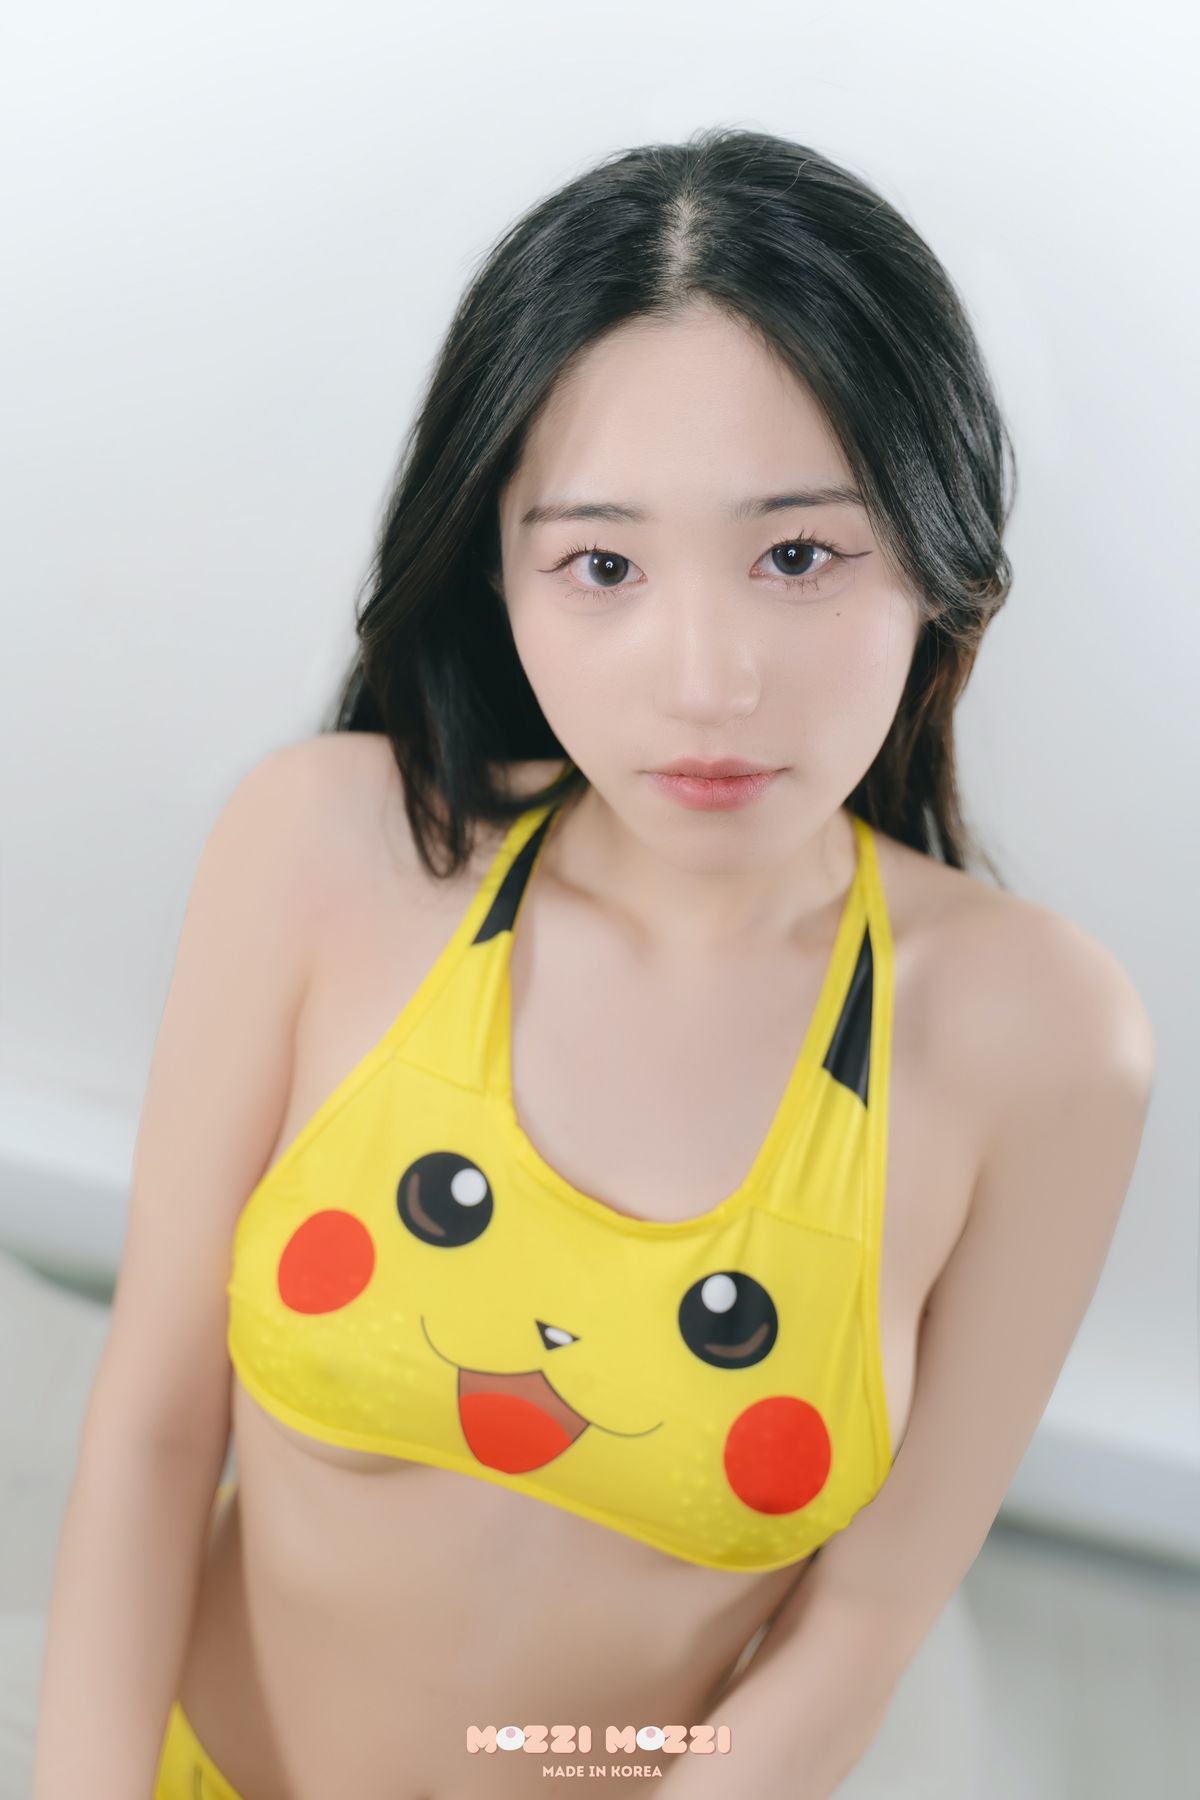 Mei A Wild Pikachu 0025 0521406173.jpg